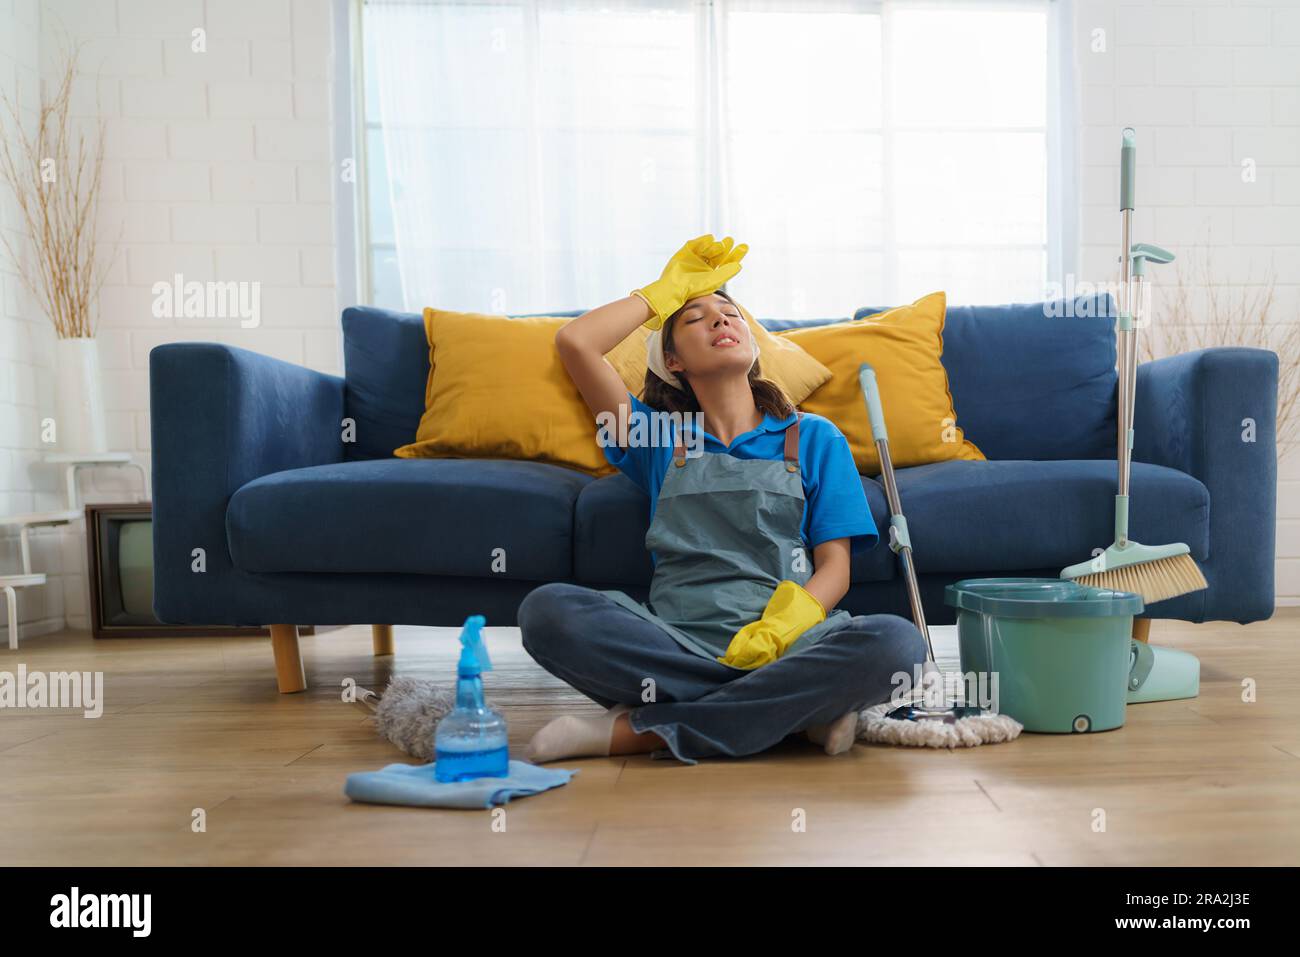 Das erschöpfte asiatische Zimmermädchen kämpft mit Ermüdung, während es das Haus wischte, und zeigt die Herausforderungen und harte Arbeit hinter dem Haus Stockfoto